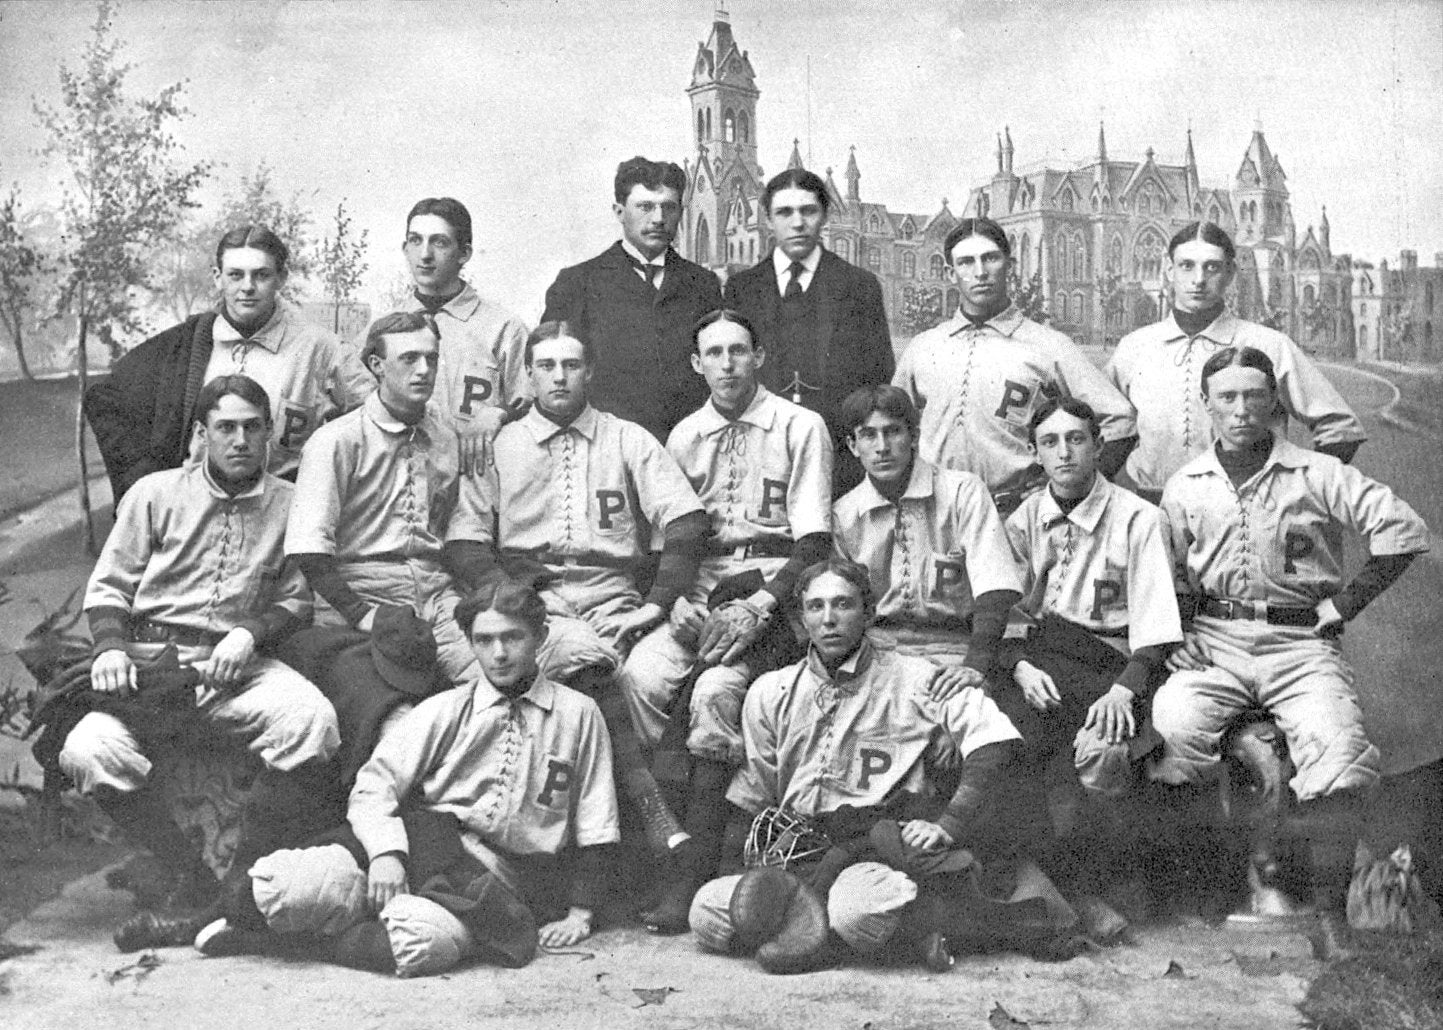 University baseball team, 1896